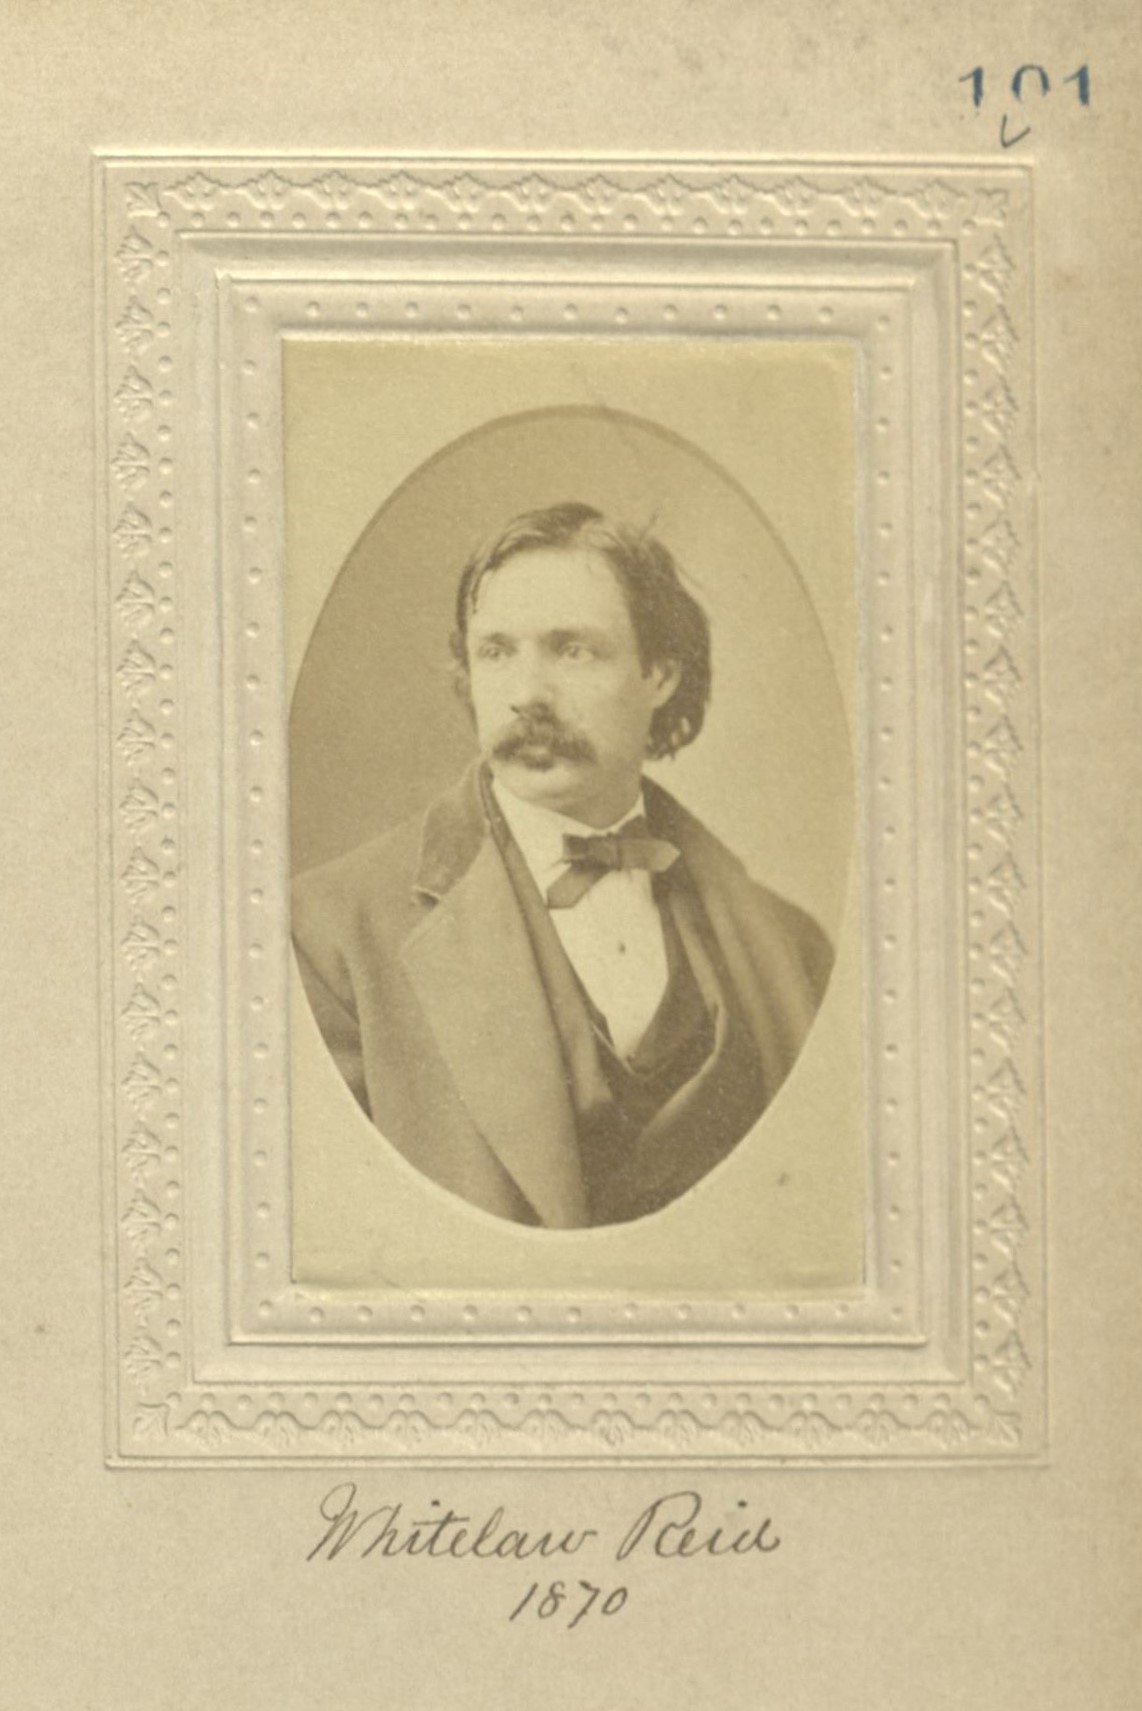 Member portrait of Whitelaw Reid